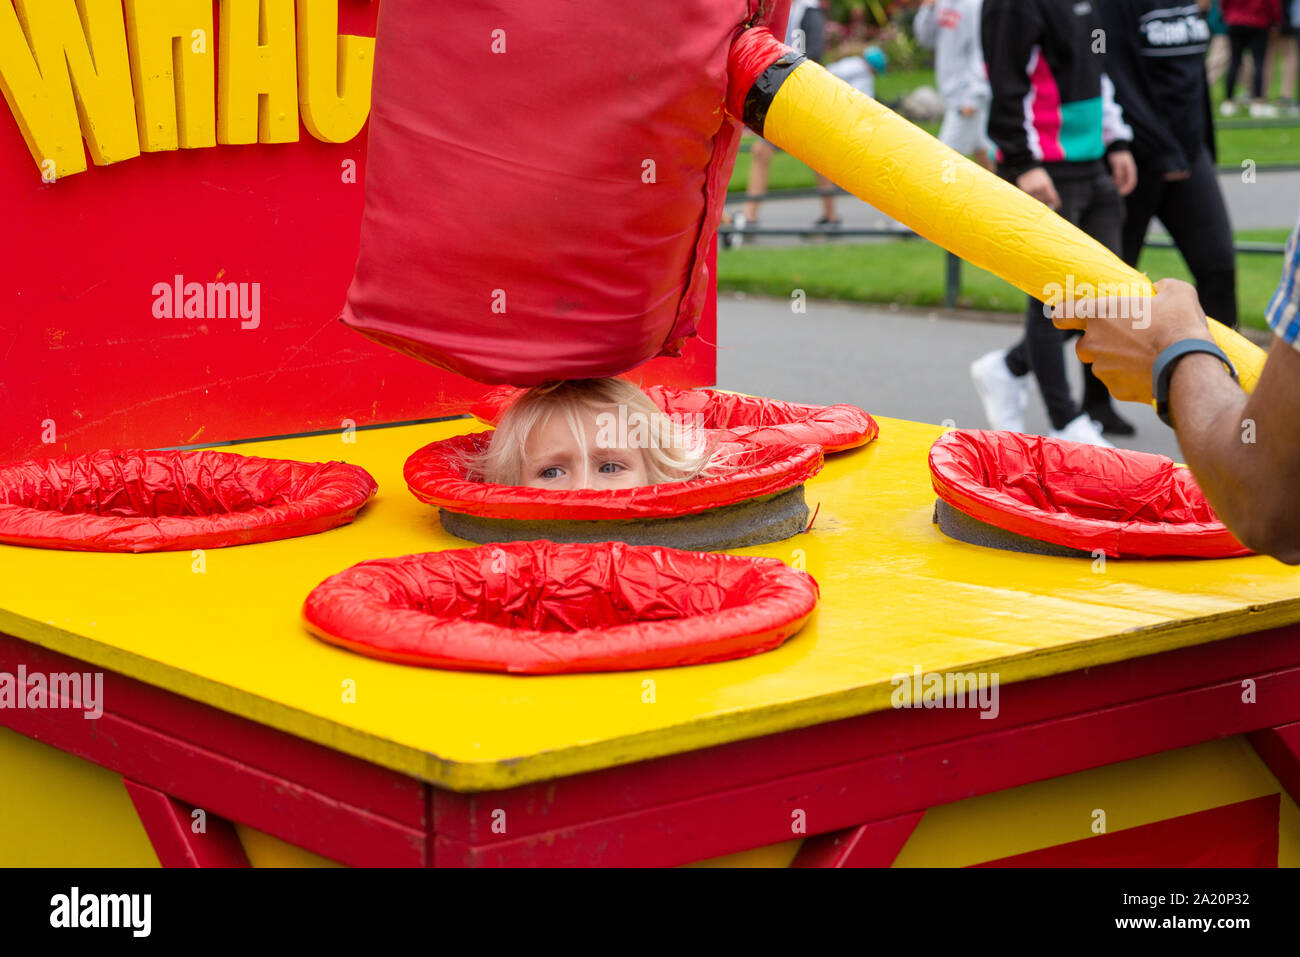 Bambino essendo whacked sulla testa con un gigantesco martello schiuma umani nel pop-up al gioco delle arti dal mare festival, Bournemouth Dorset, Regno Unito, Settembre 2019 Foto Stock